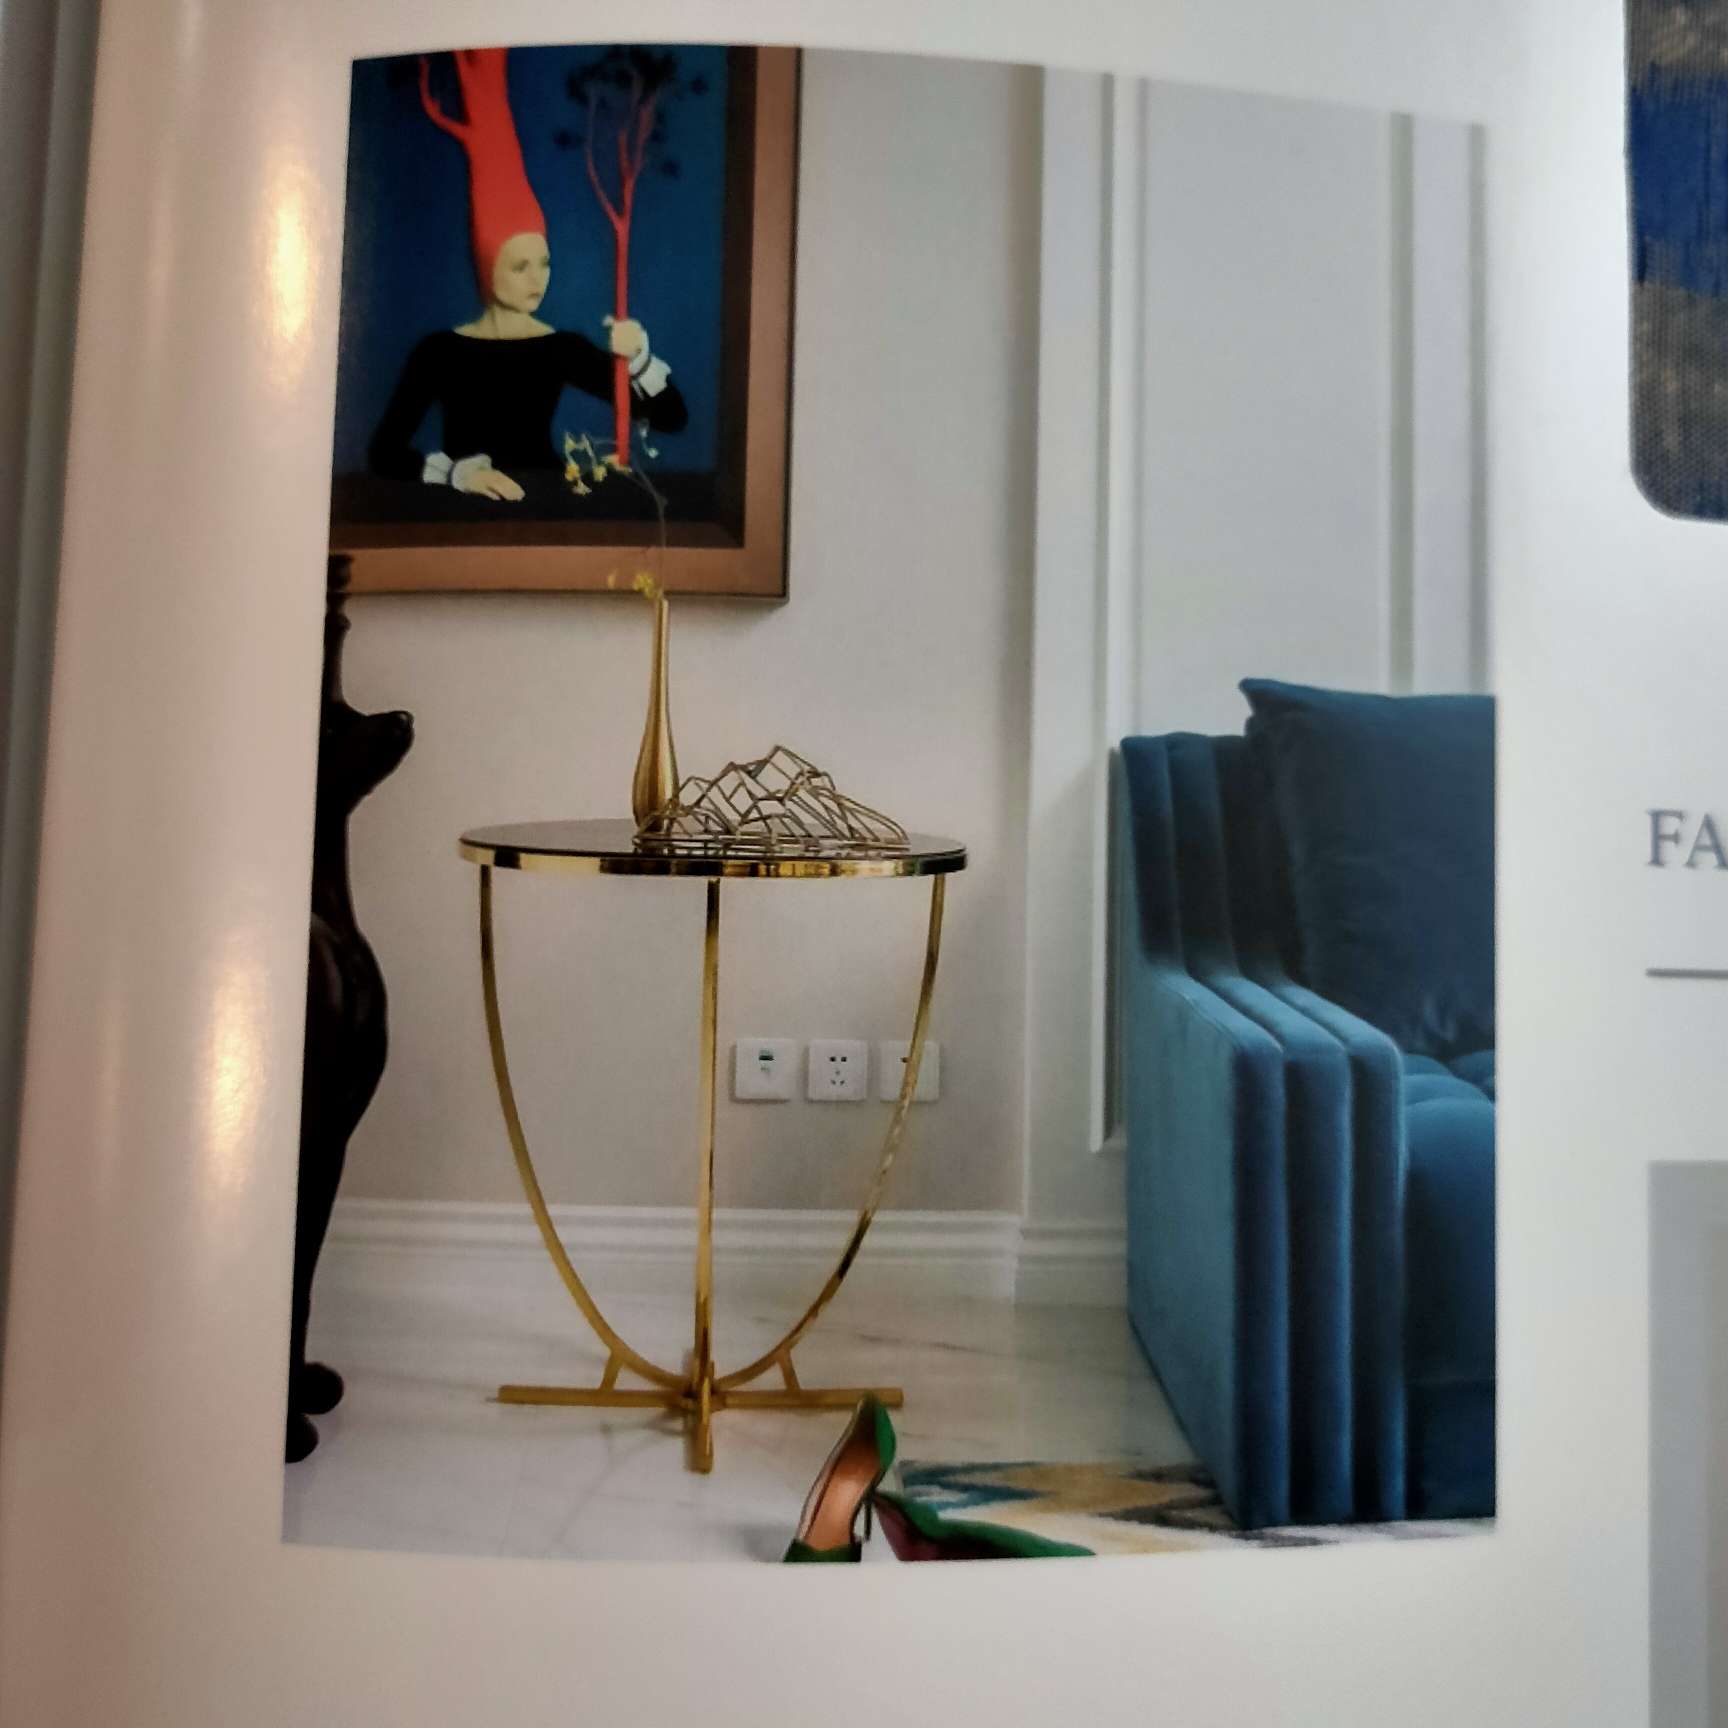 法式轻奢系列窗帘高端高精密提花深蓝色&黄奶油色带幔窗帘4m内细节图